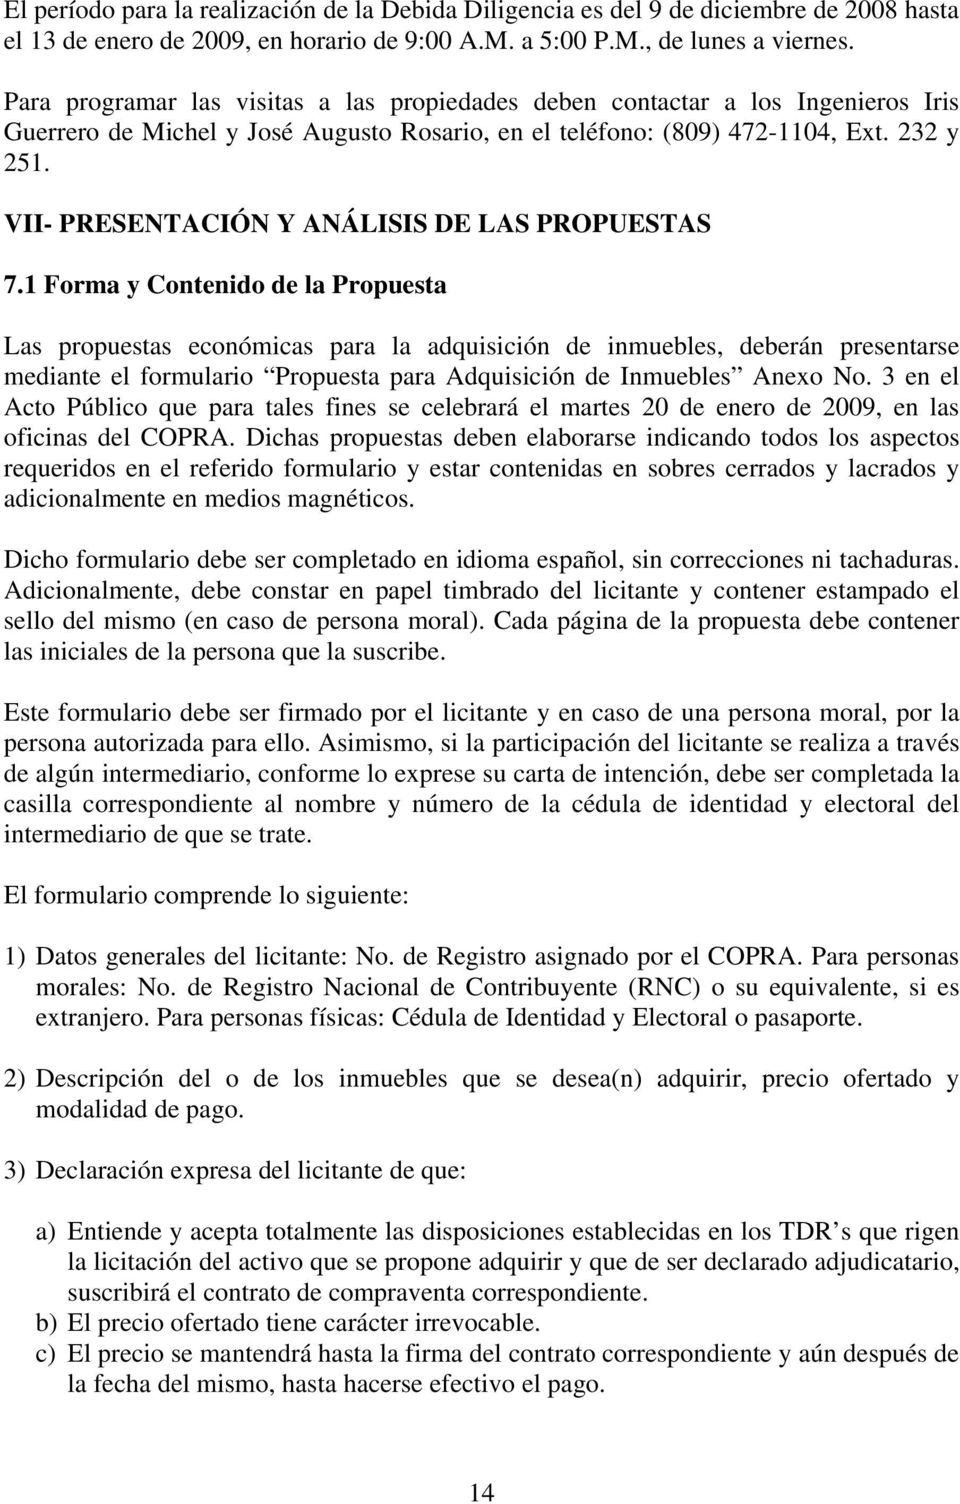 VII- PRESENTACIÓN Y ANÁLISIS DE LAS PROPUESTAS 7.